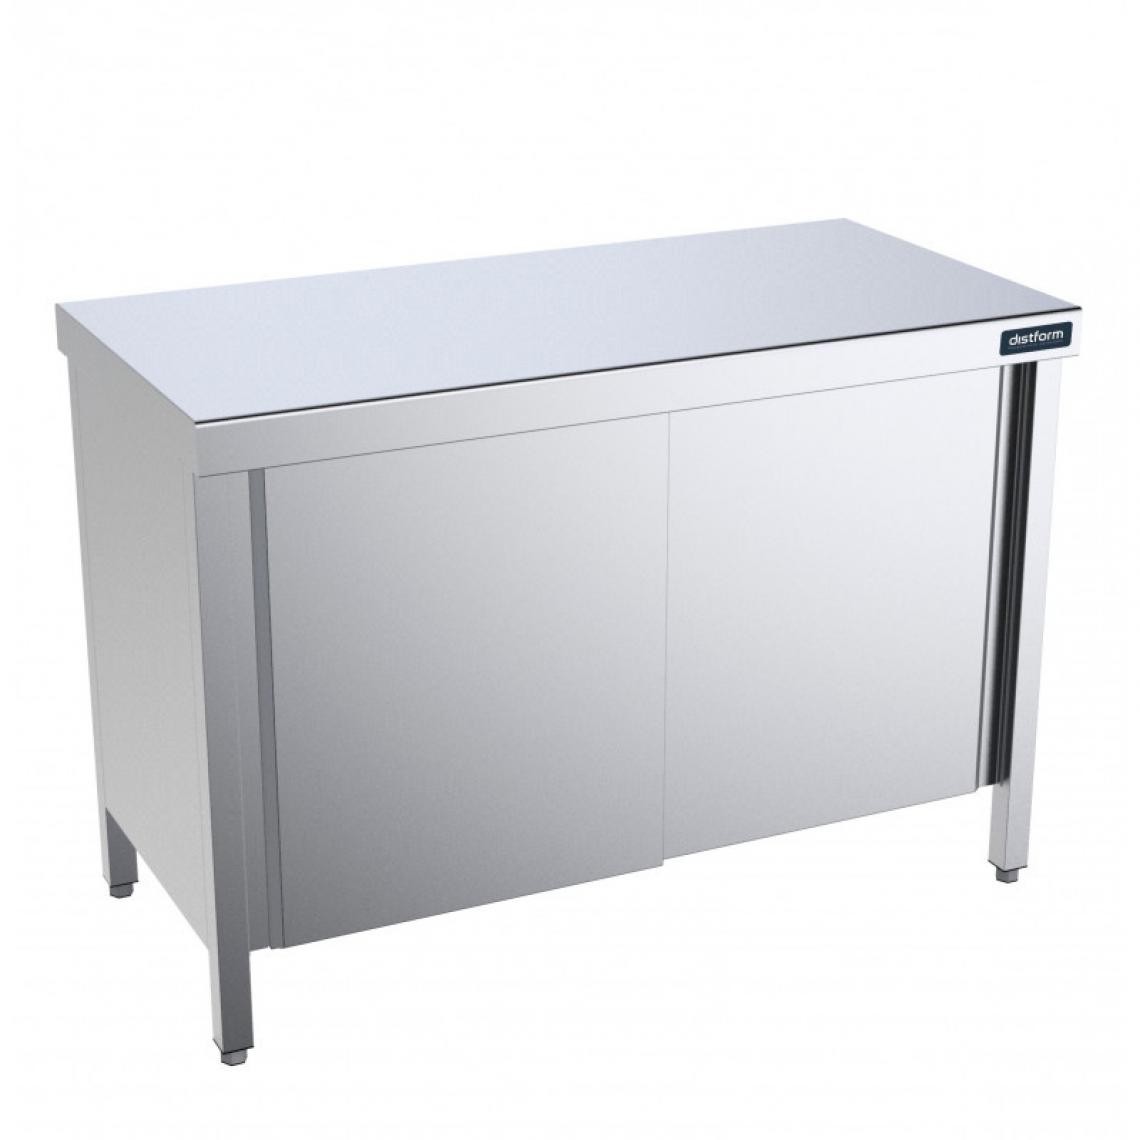 DISTFORM - Table en Inox Gamme 900 avec Portes et Etagères - Distform - Acier inoxydable1000x900 - Tables à manger